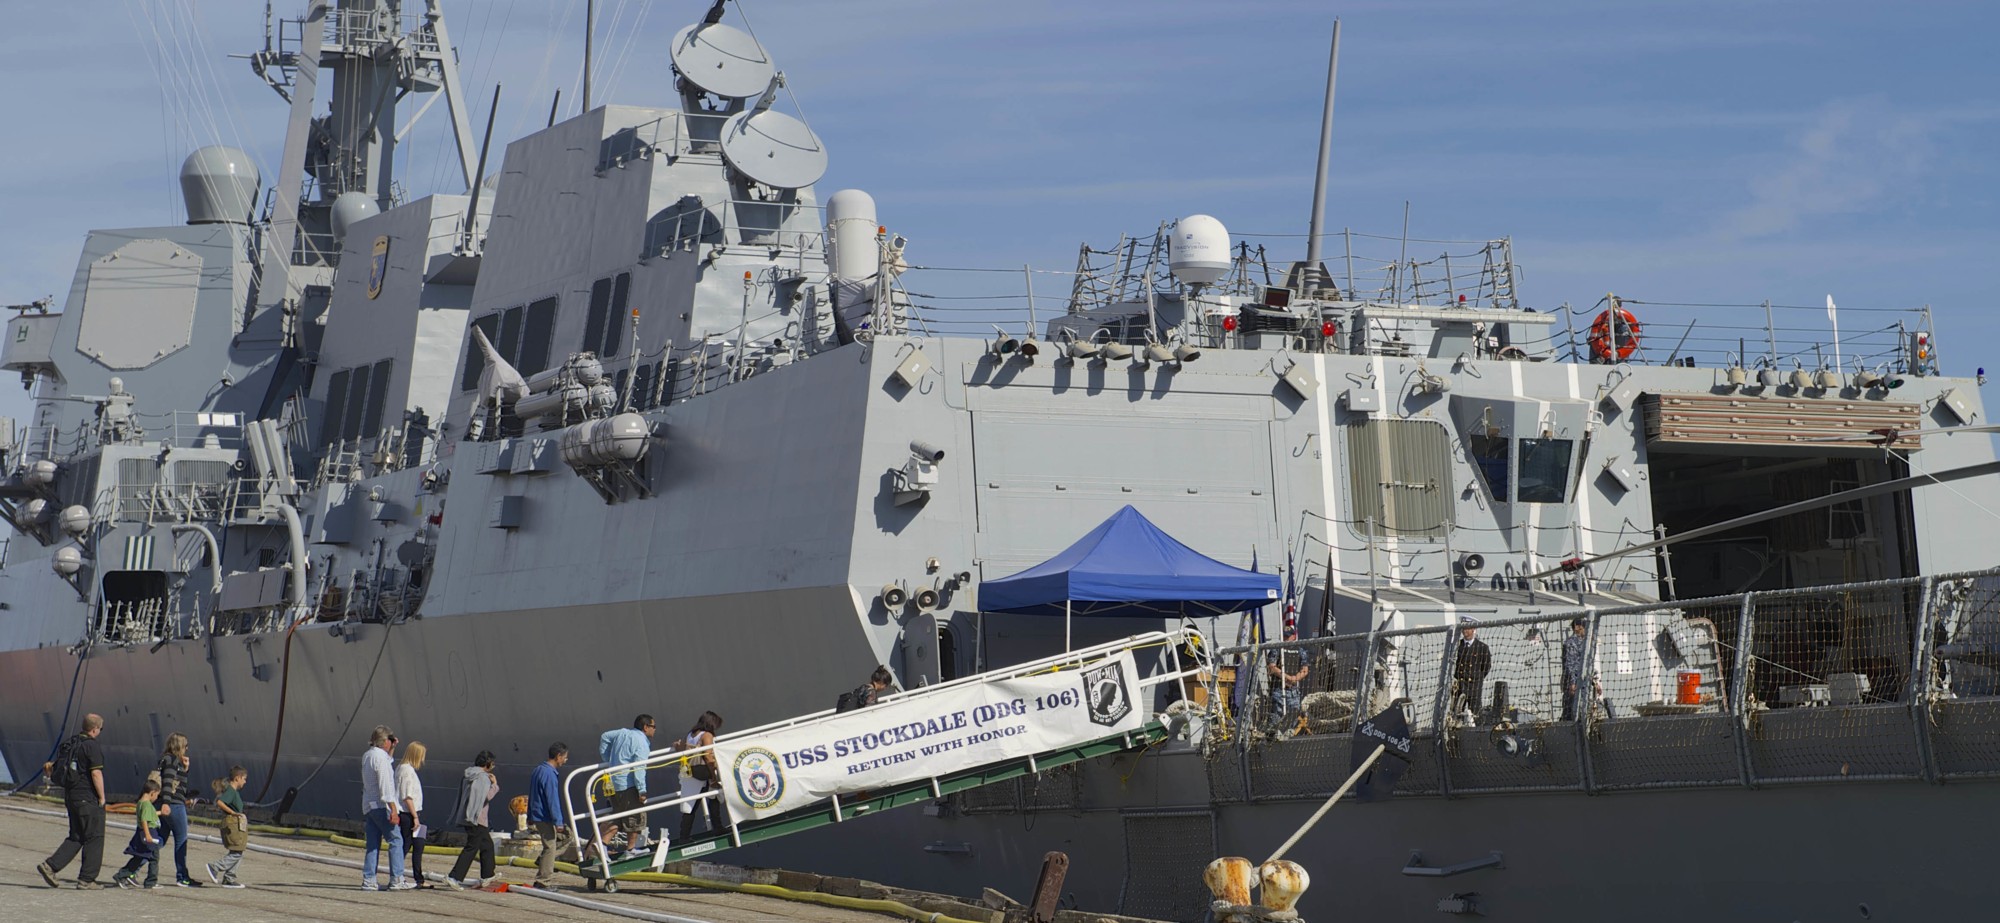 ddg-106 uss stockdale arleigh burke class guided missile destroyer aegis us navy san francisco fleet week 2015 81